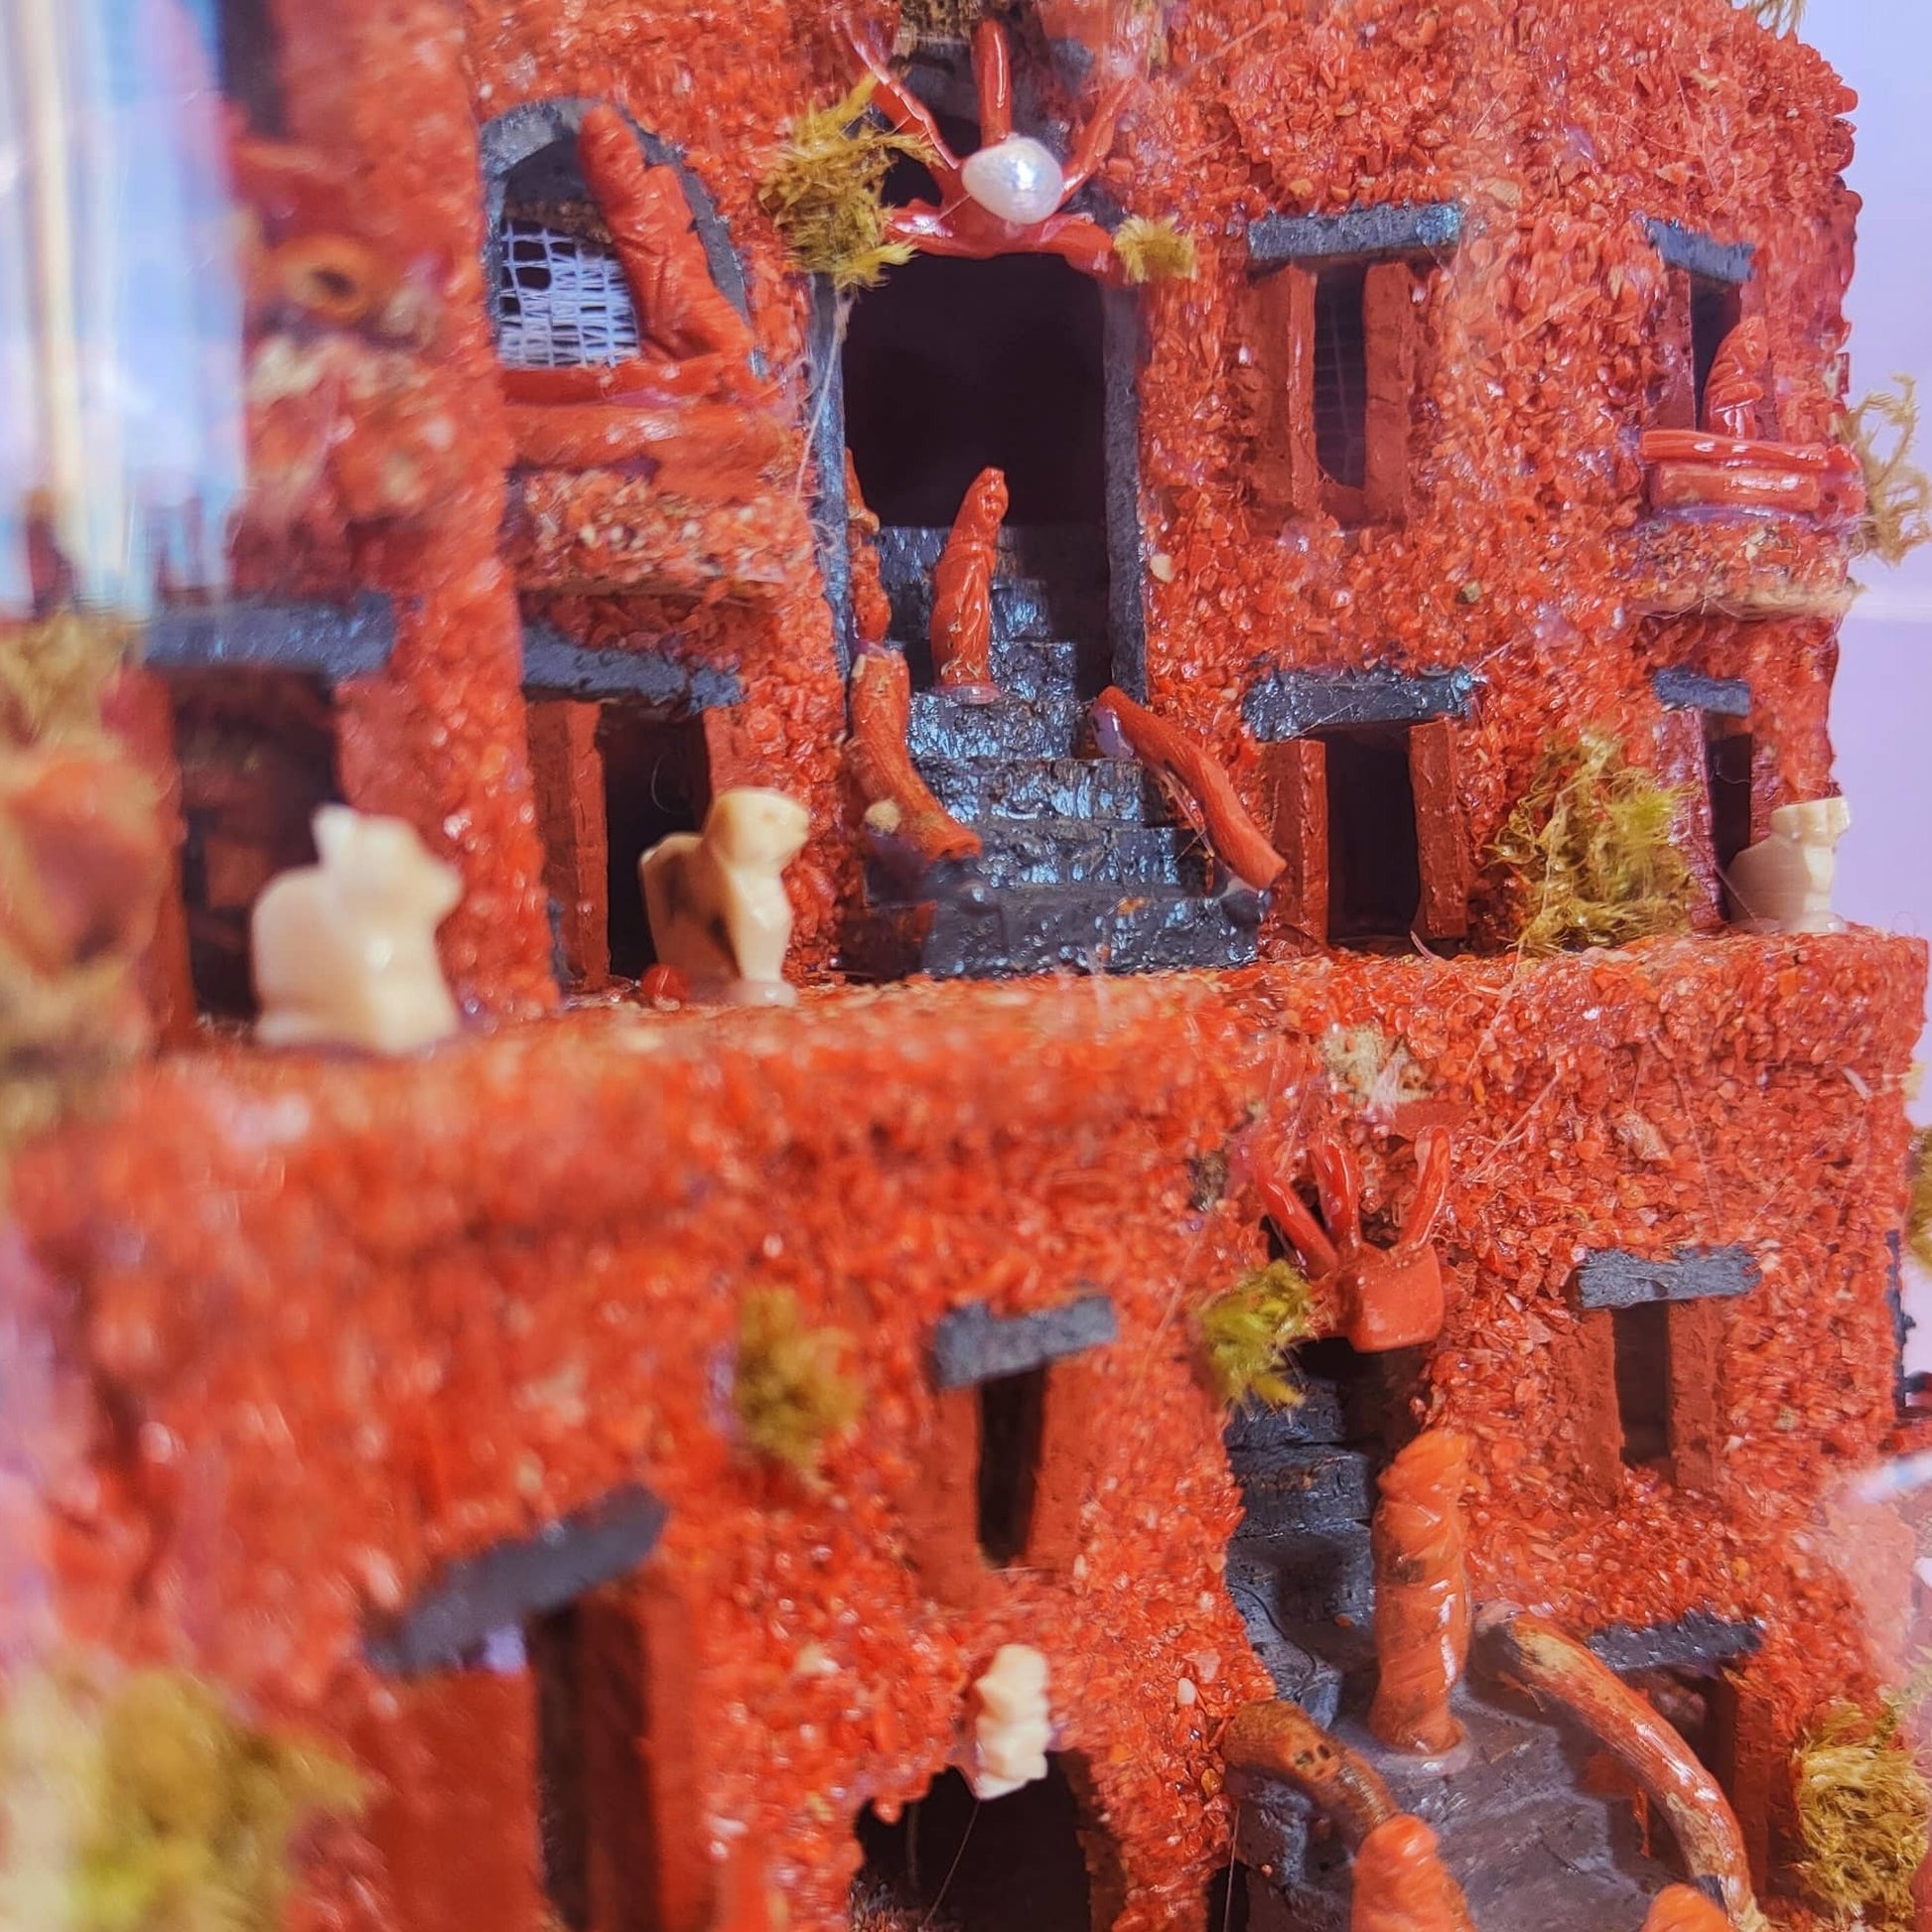 presepe artigianale di corallo rosso naturale realizzato completamente a mano con elementi marini in campana di vetro e base in legno